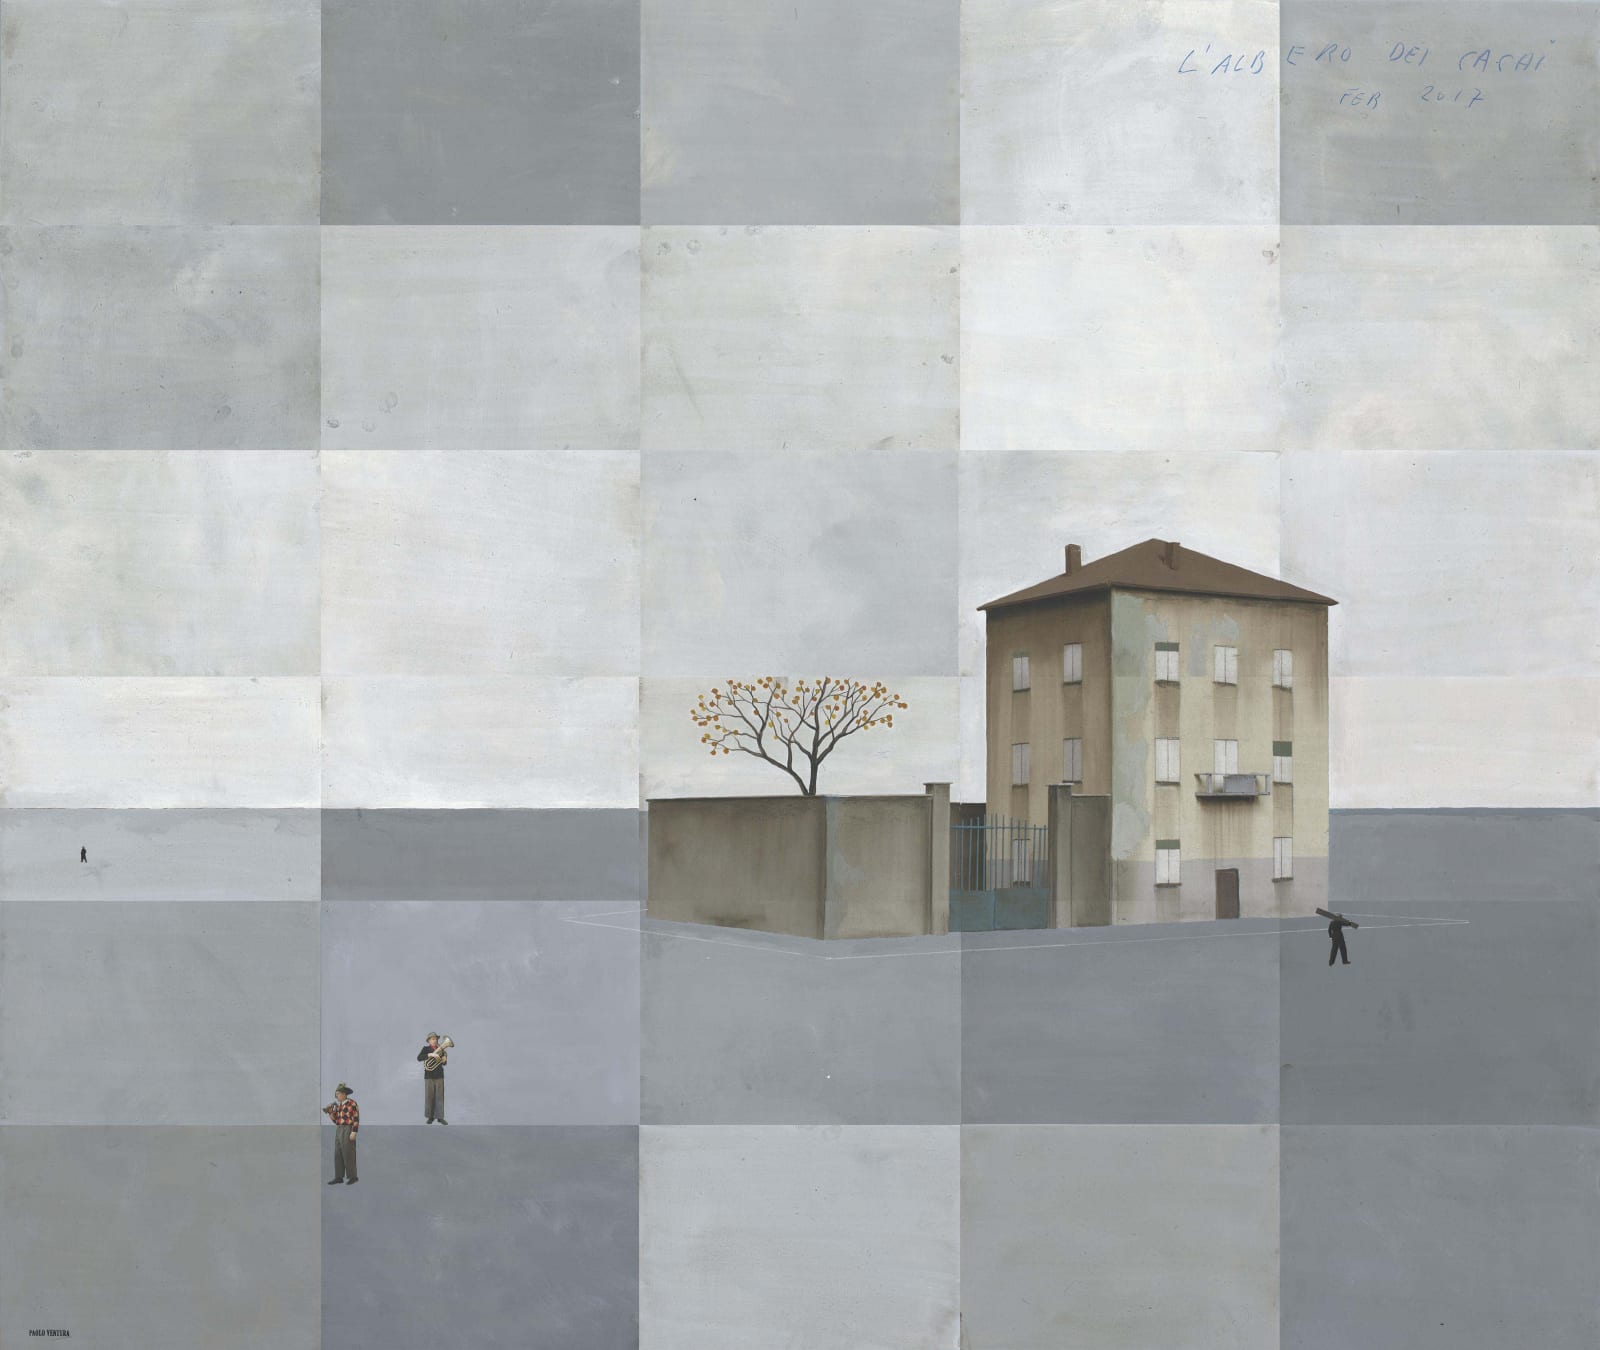 Paolo Ventura, L'albero dei cachi, 2017